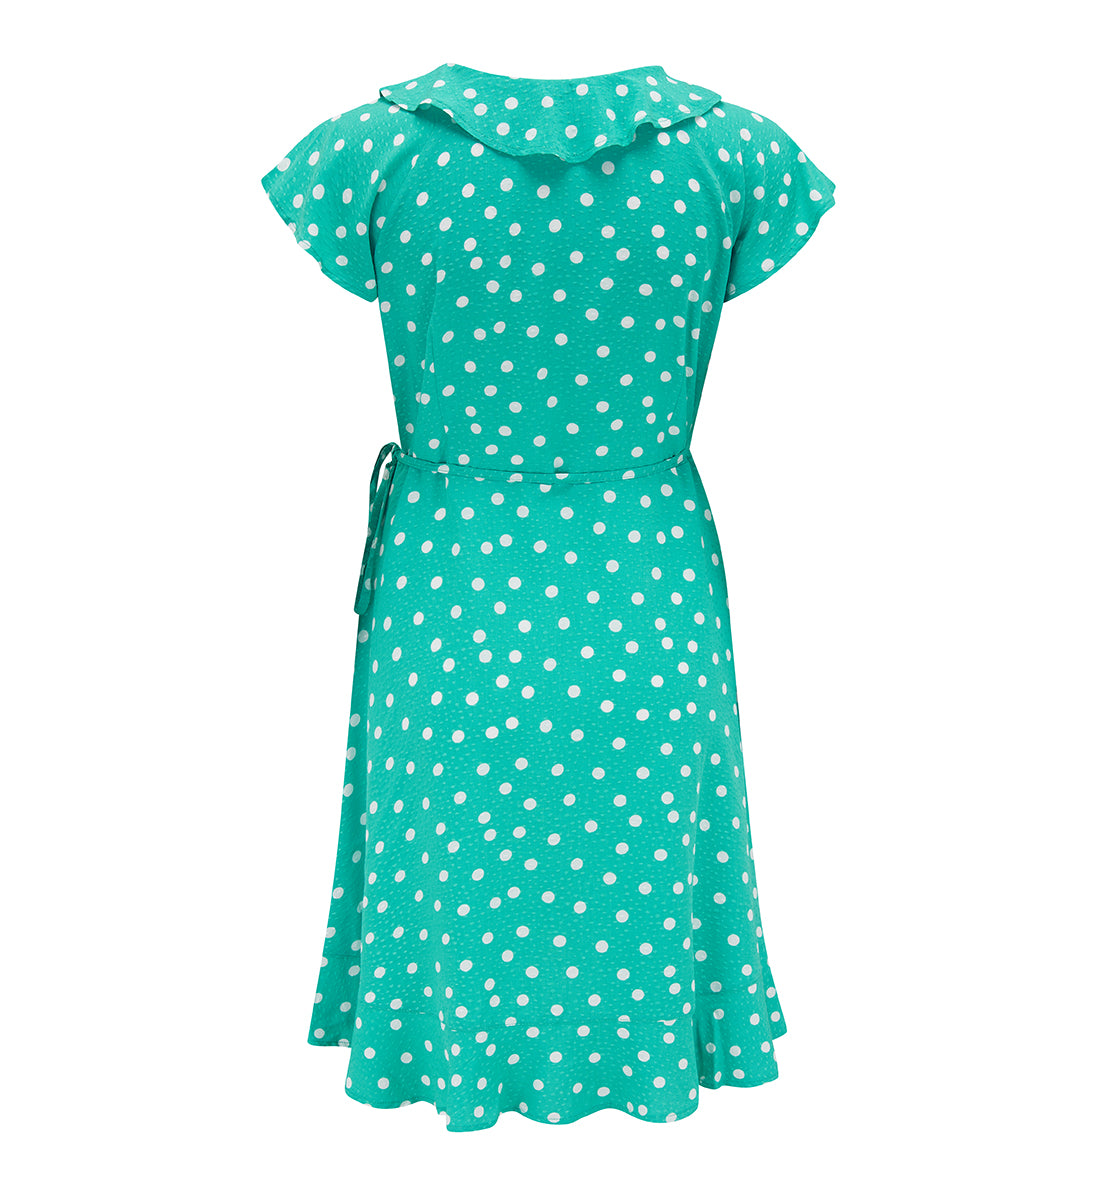 Pour Moi Frill Wrap Beach Dress (91020),XS,Green/White - Green/White,XS